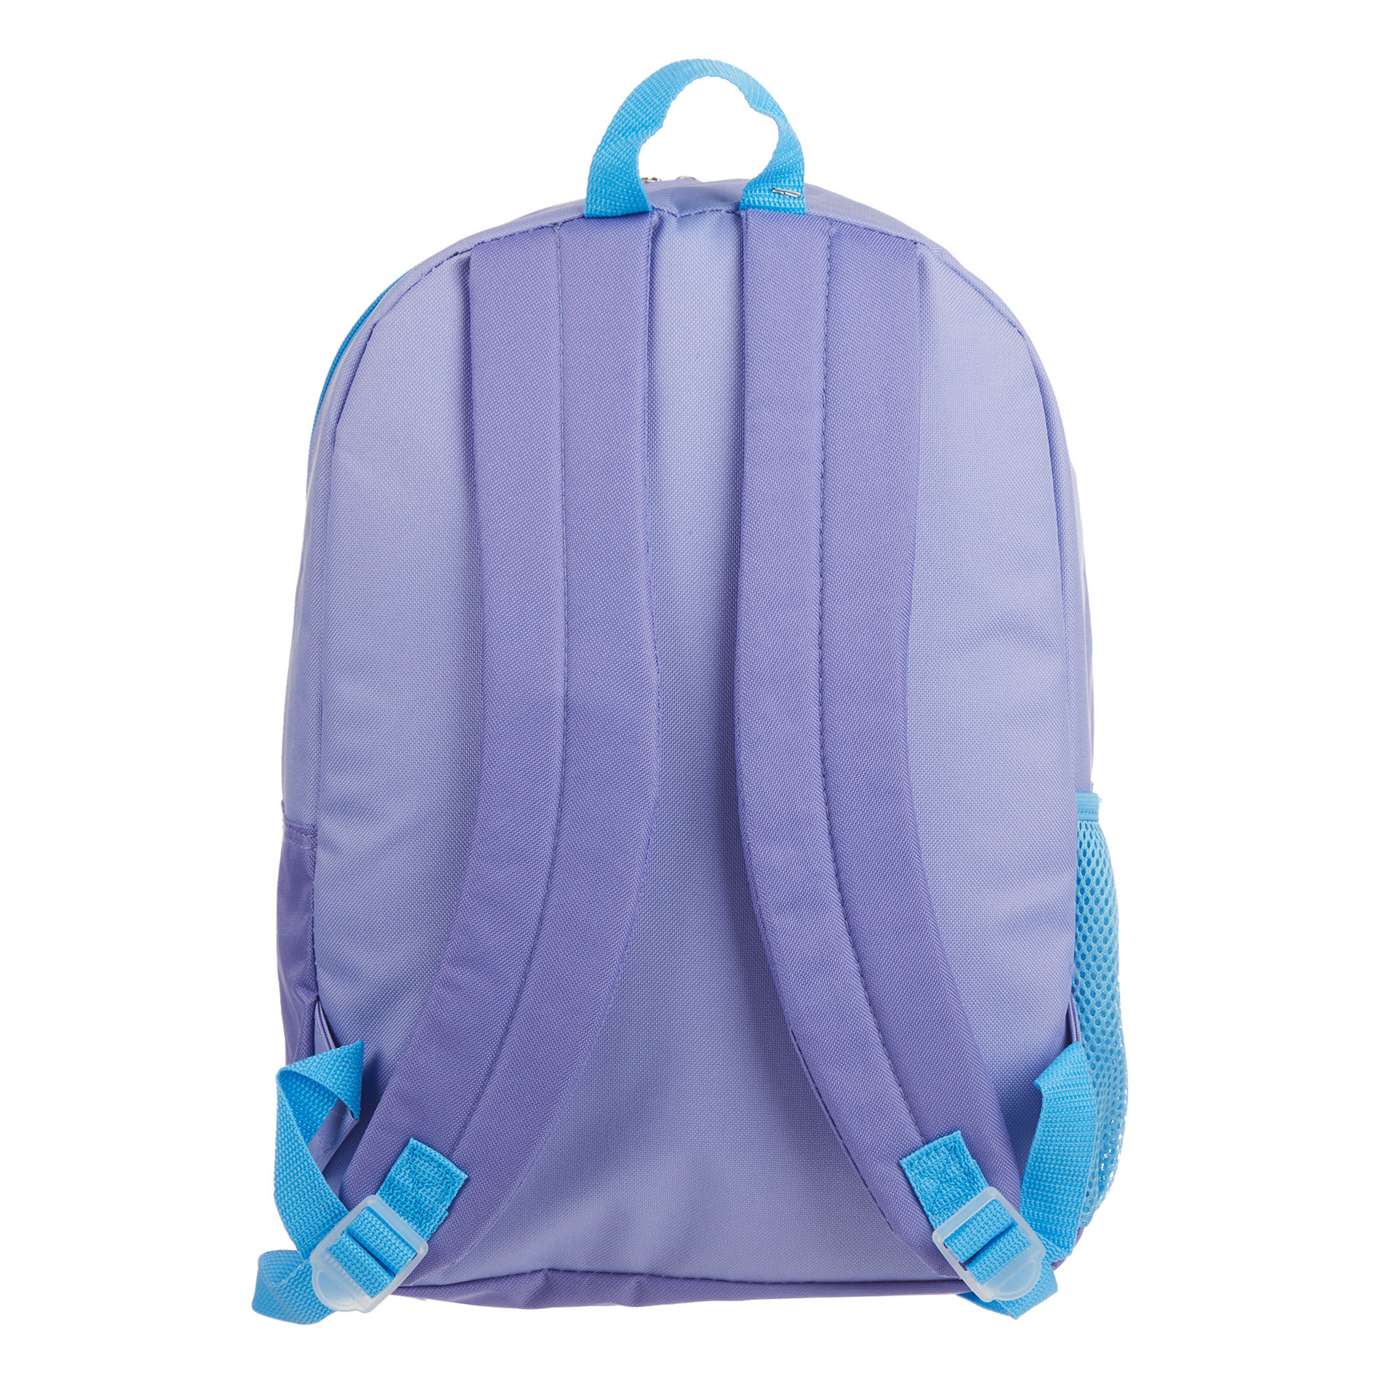 Disney Frozen Backpack & Lunch Bag Set; image 2 of 4